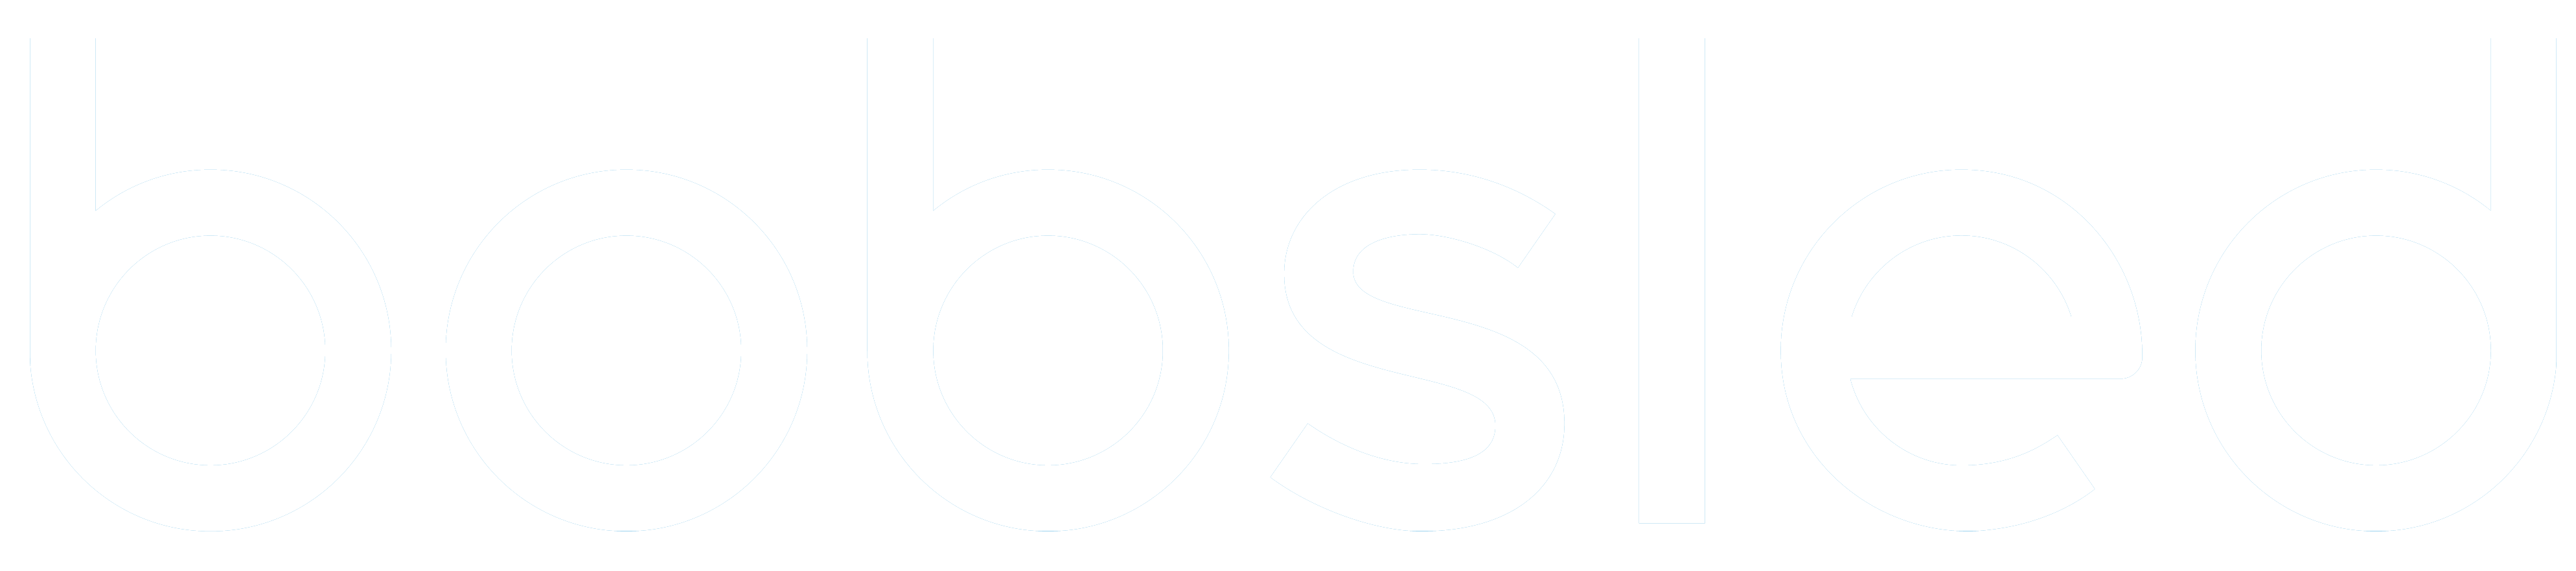 Logo no space